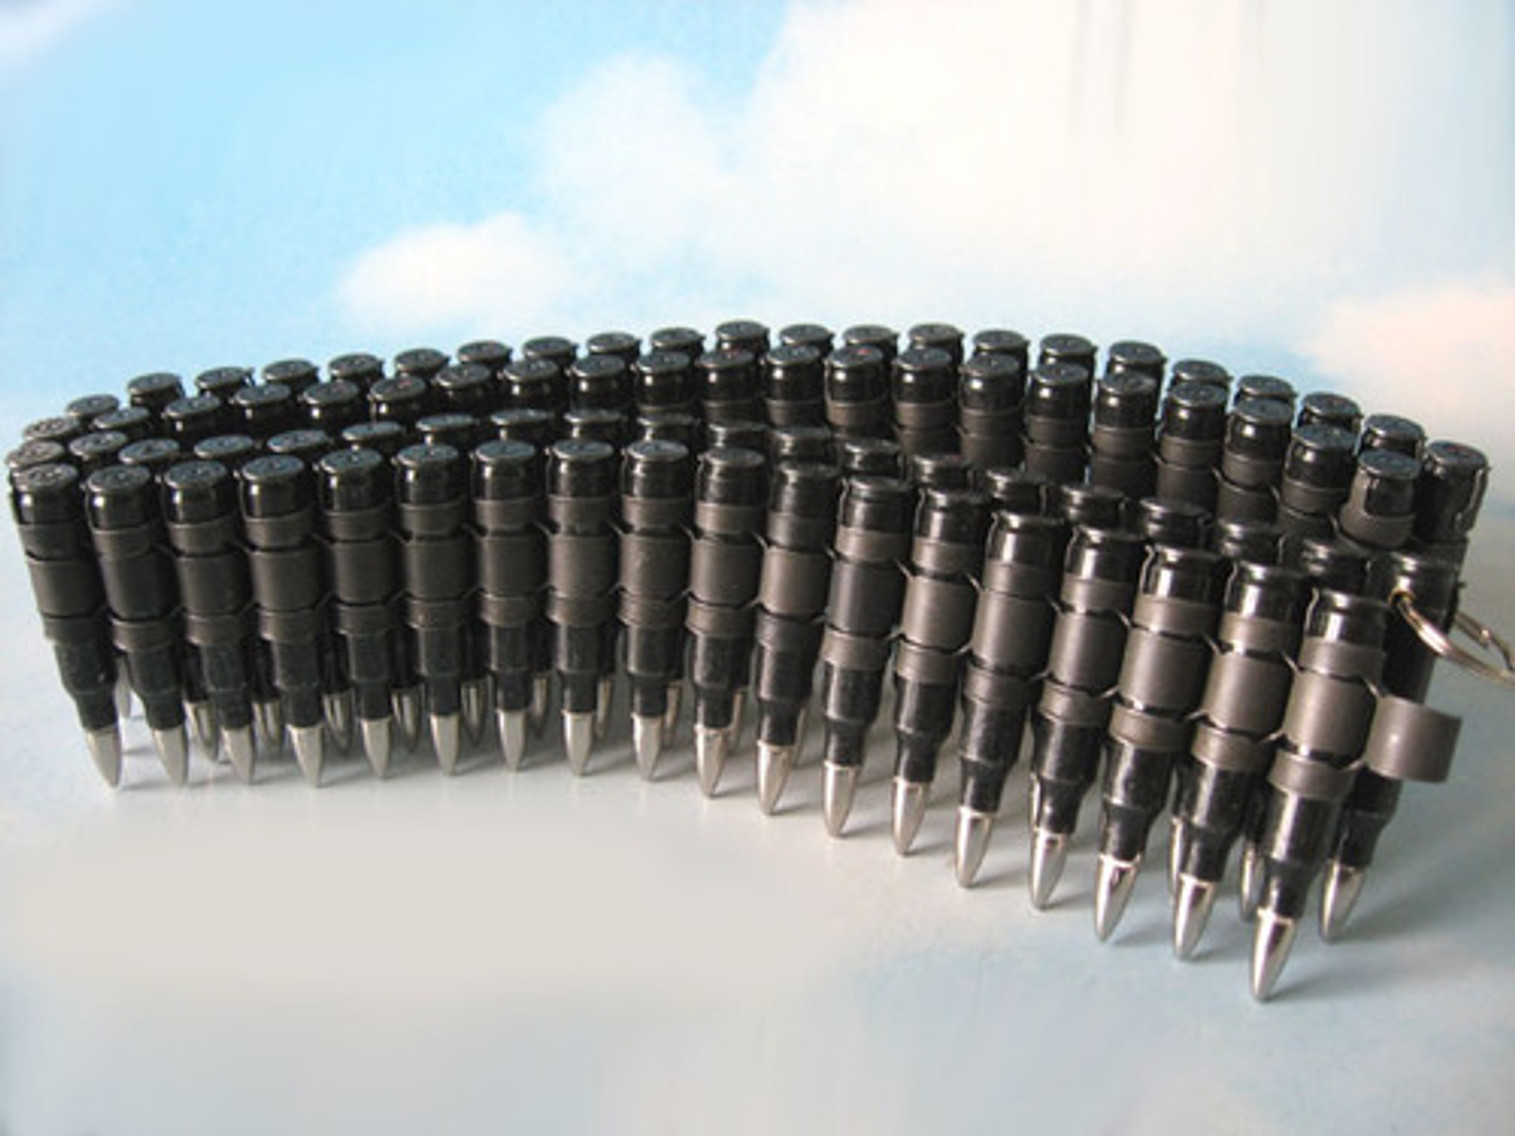 Bullet Belt 5.56 mm - Gunmetal Casings & Black Links w/ Nickel Tips